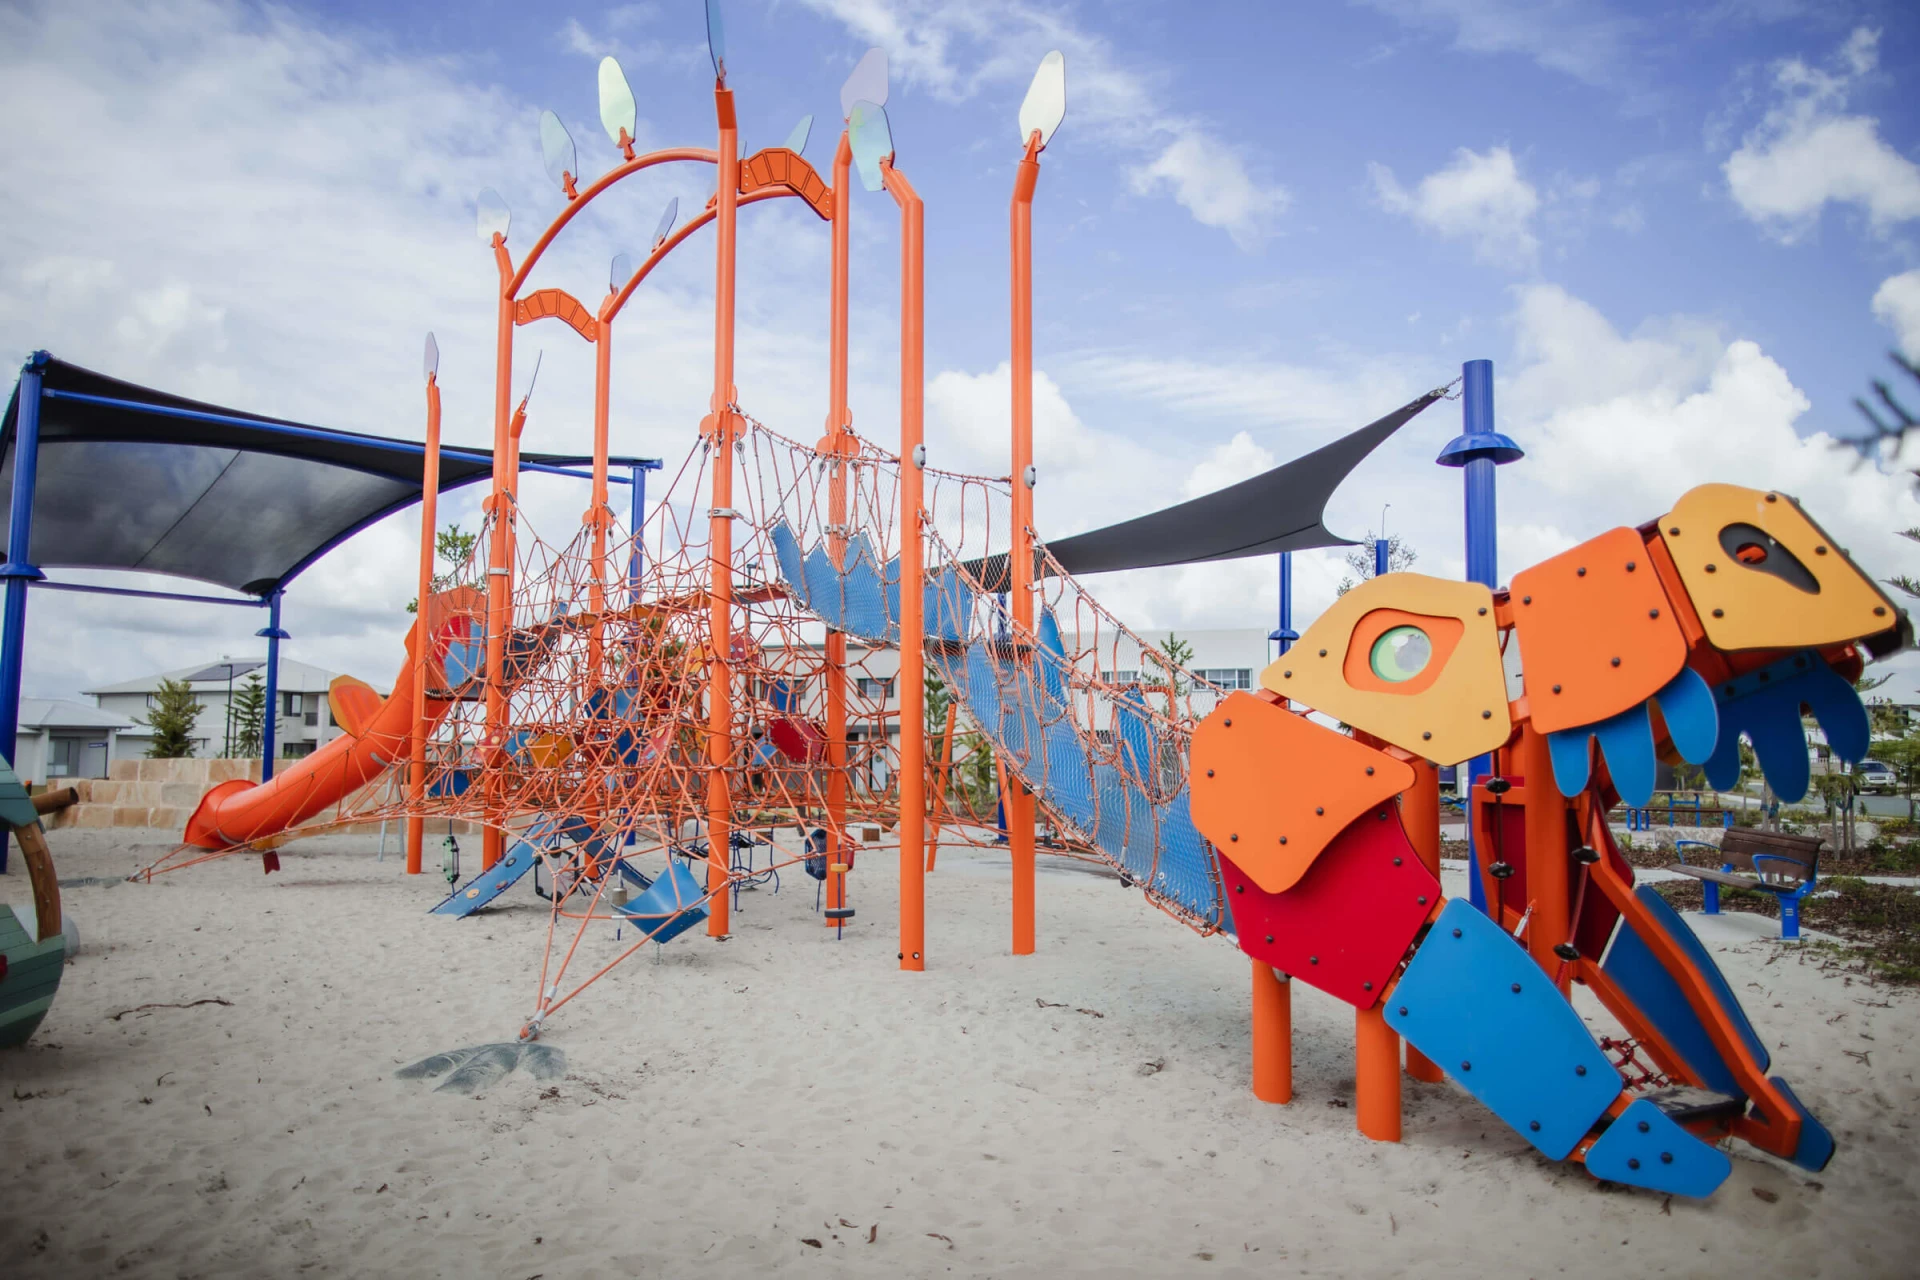 Kundenspezifischer Seilspielplatz in Australien, der einen orange-blauen Dinosaurier darstellt